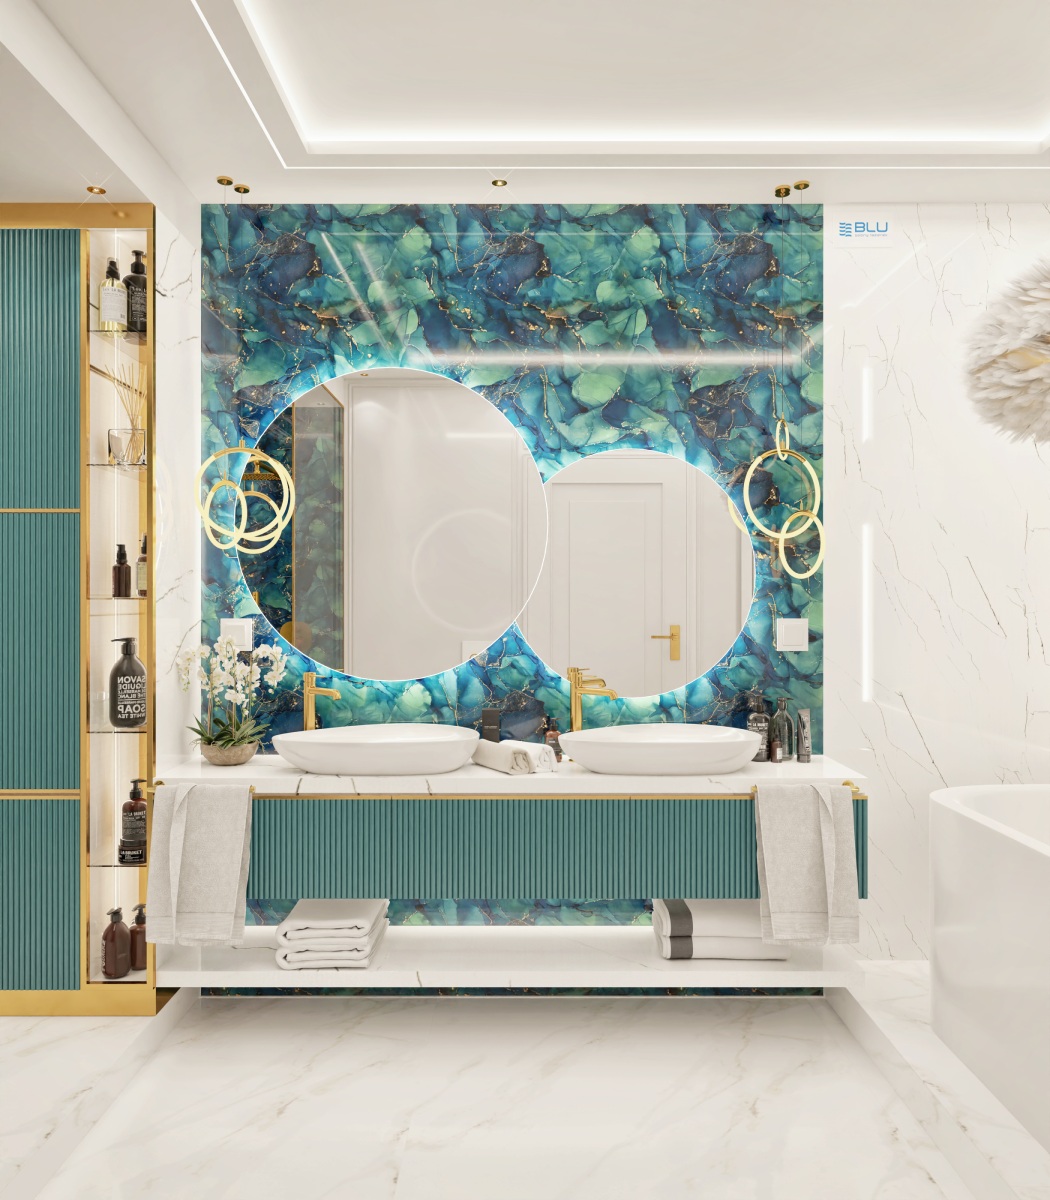 Nowoczesny salon kąpielowy z podświetleniem lustra.